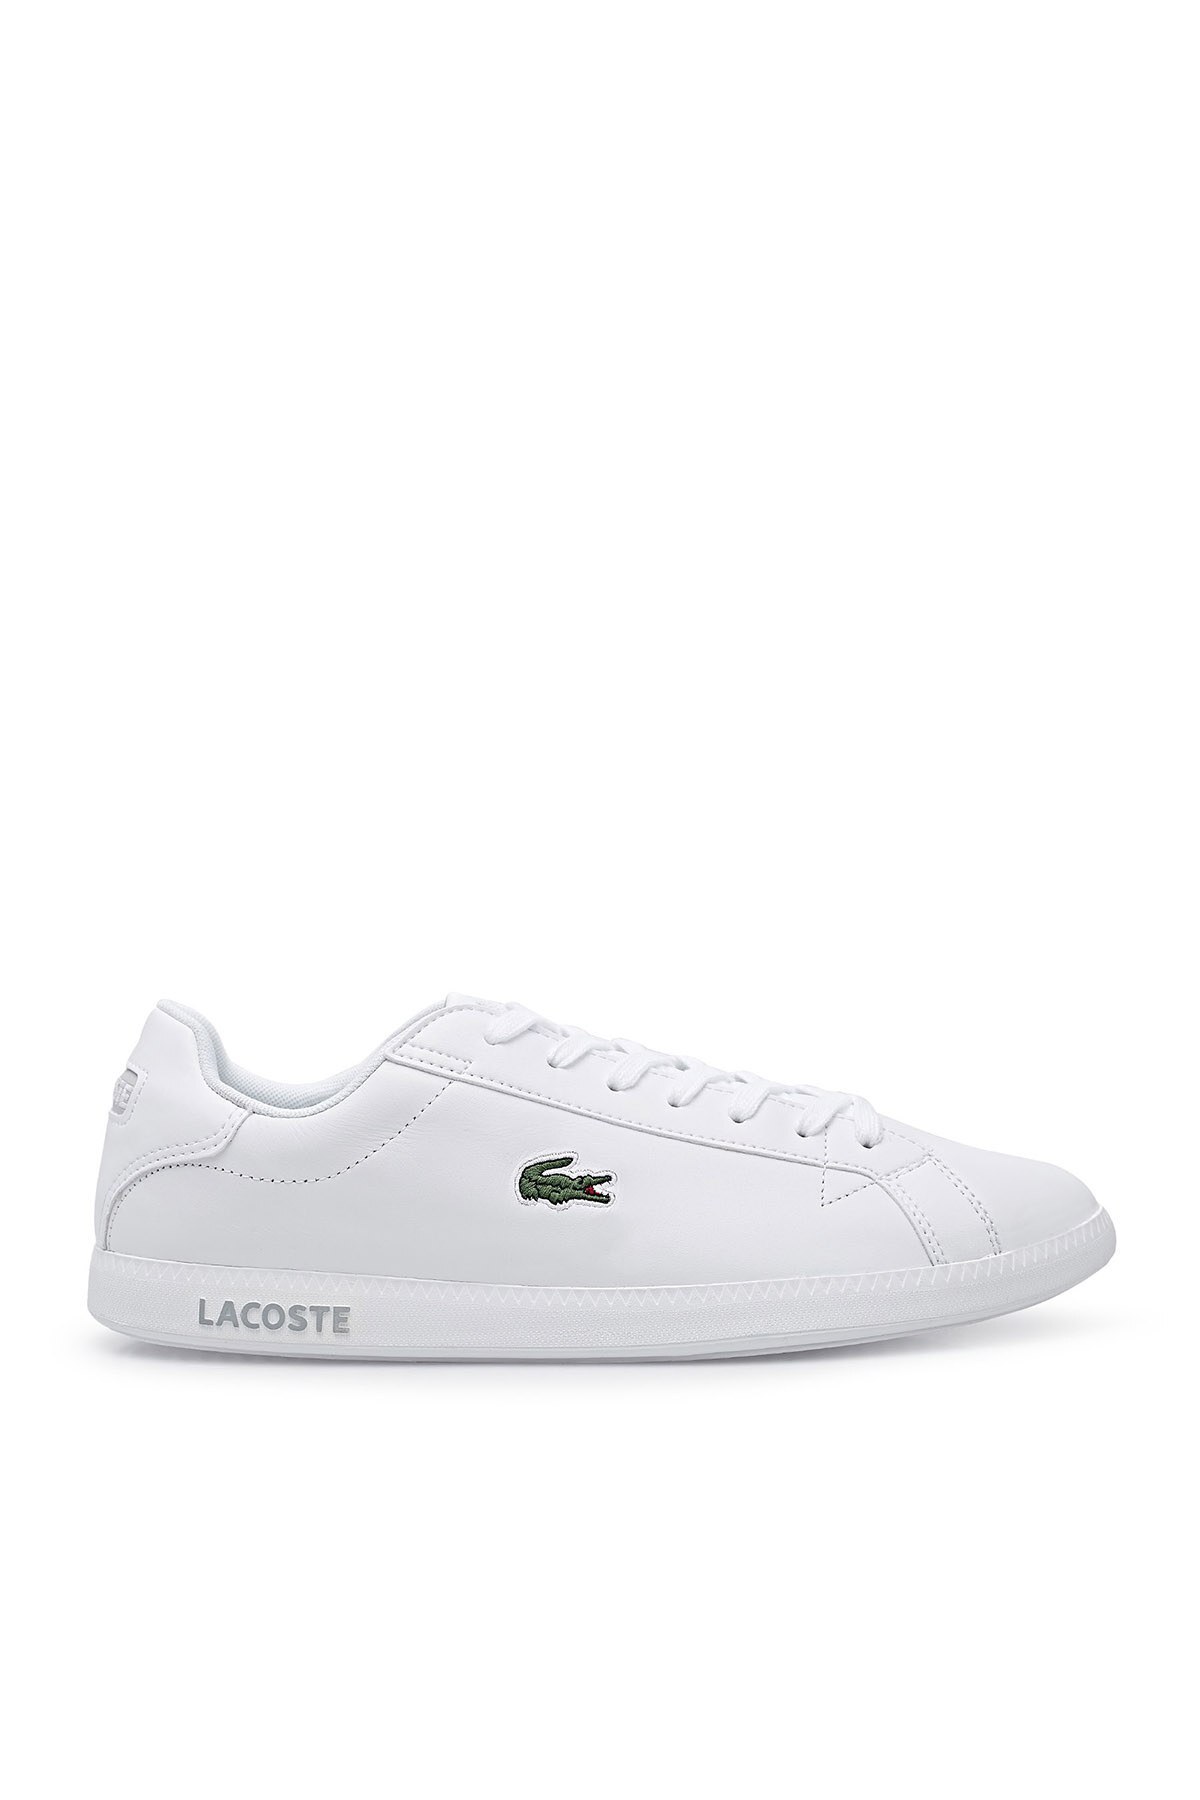 Lacoste Graduate Deri Sneaker Erkek Ayakkabı 7-41SMA001221G